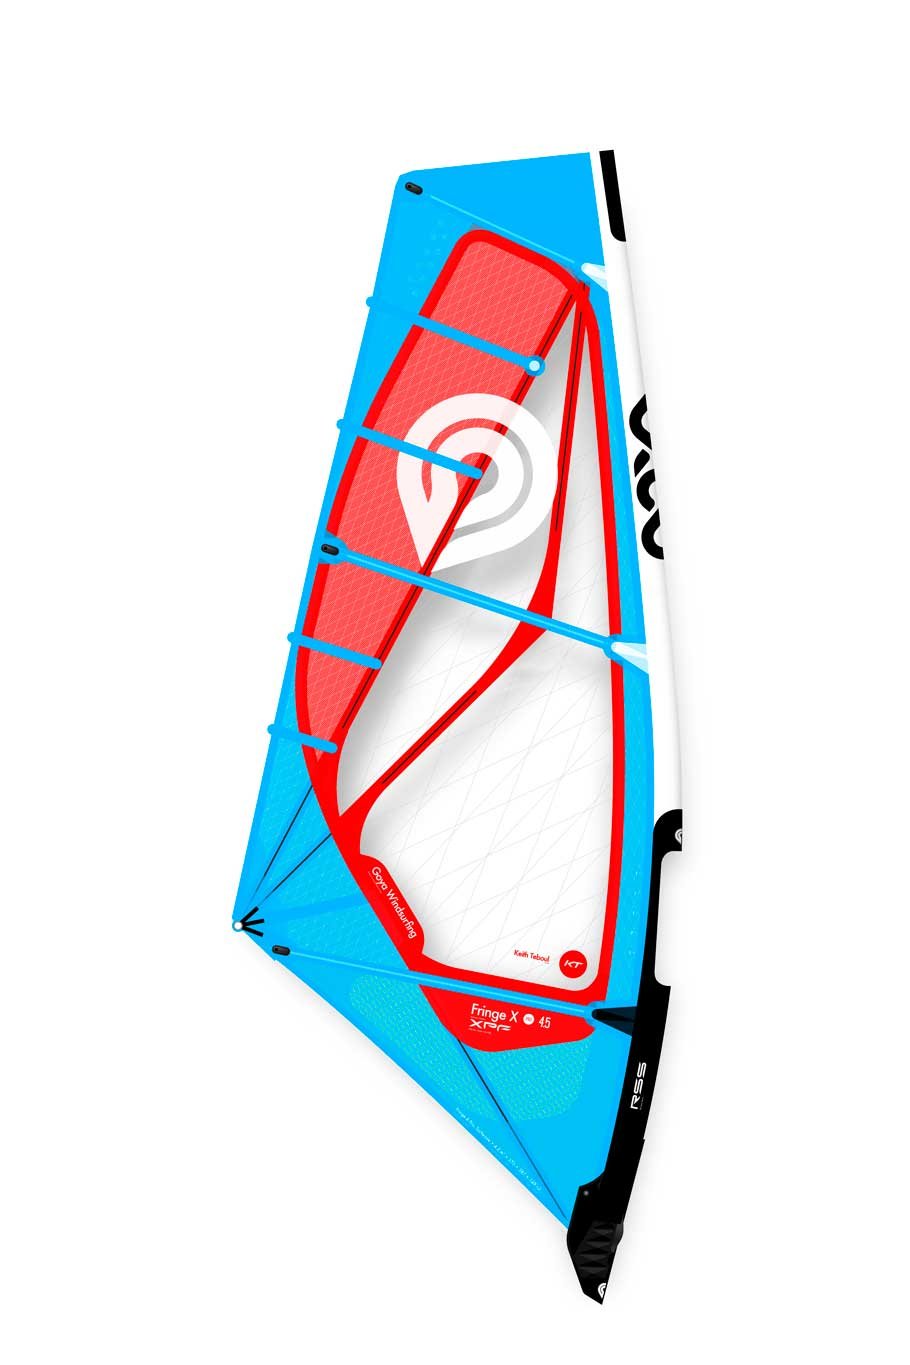 Goya Nexus Pro 2019 planche à voile sail-Choisissez votre taille/couleur Économisez 20%